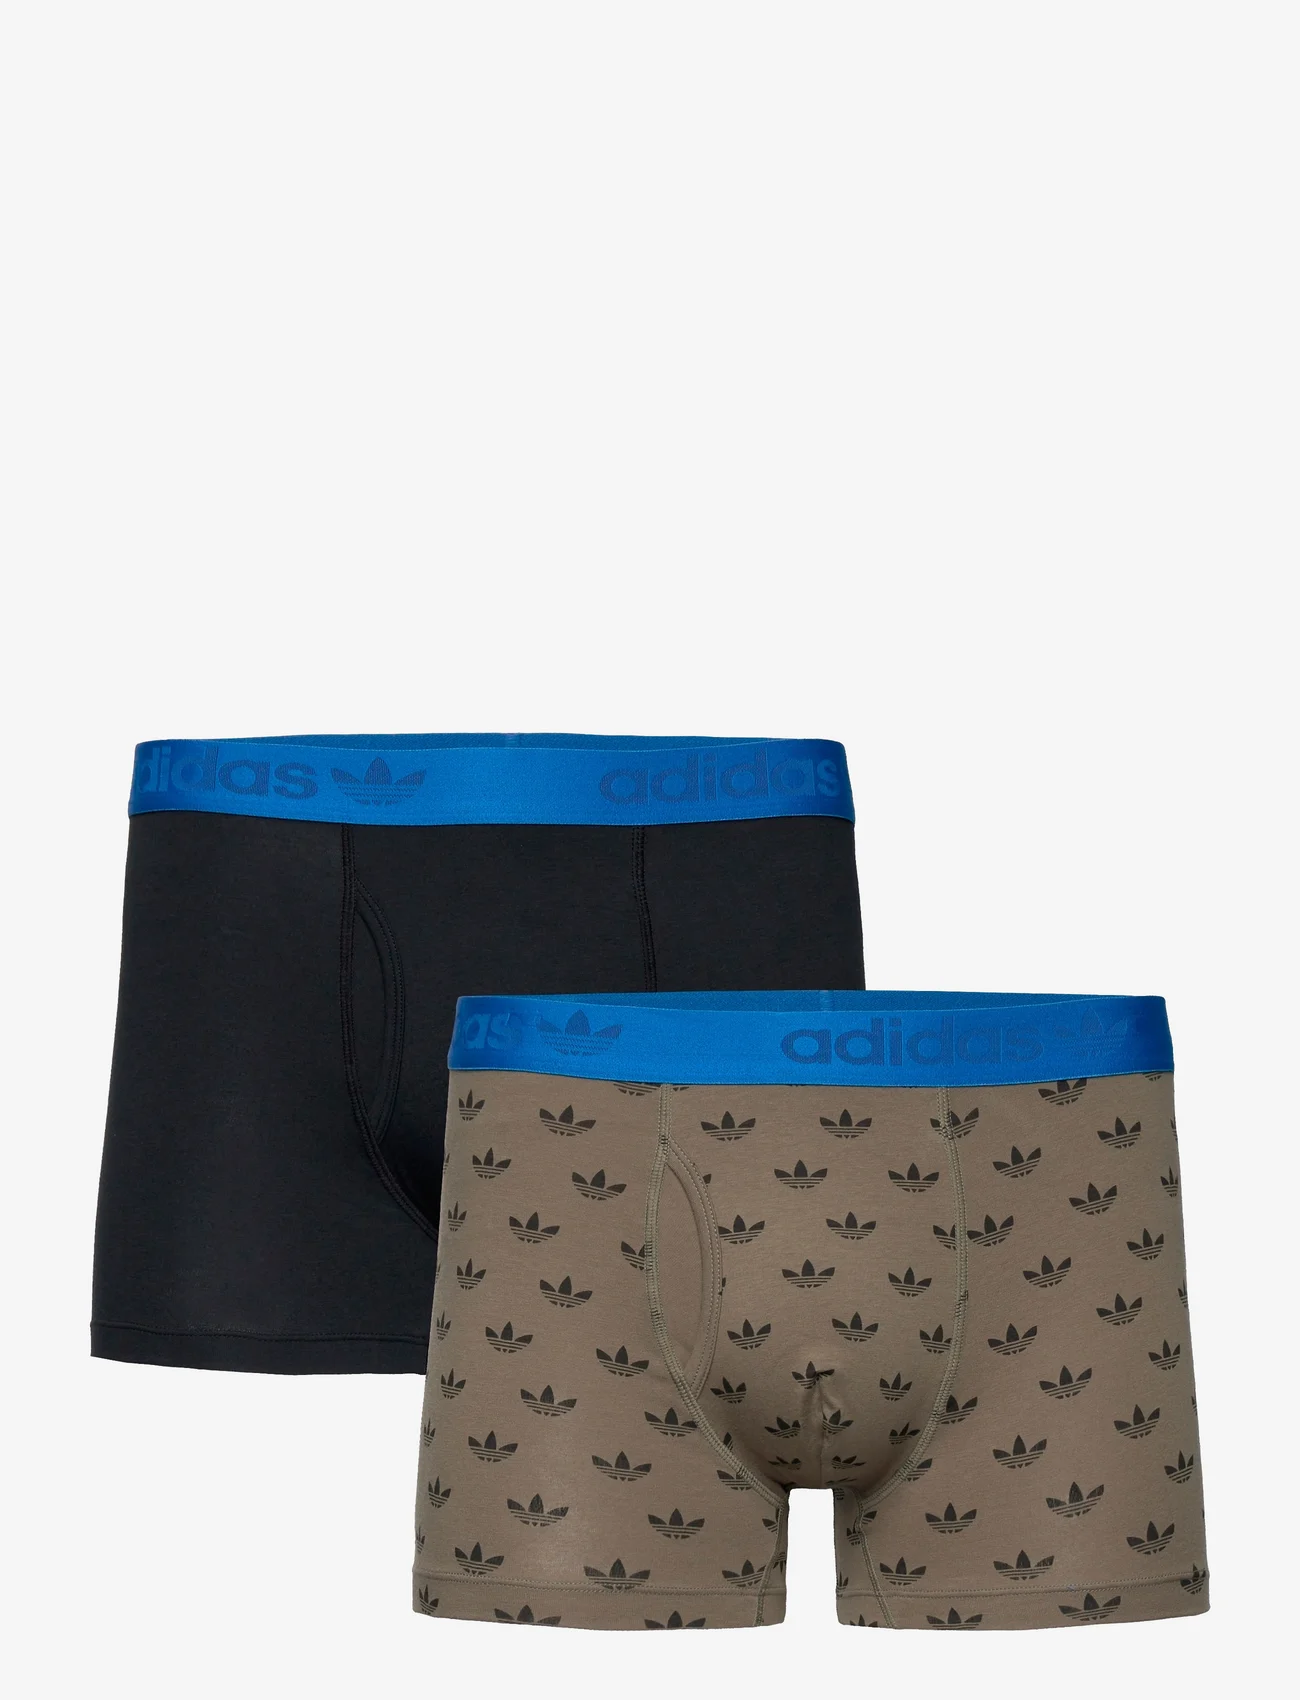 adidas Originals Underwear - Trunks - boxer briefs - assorted 29 - 0